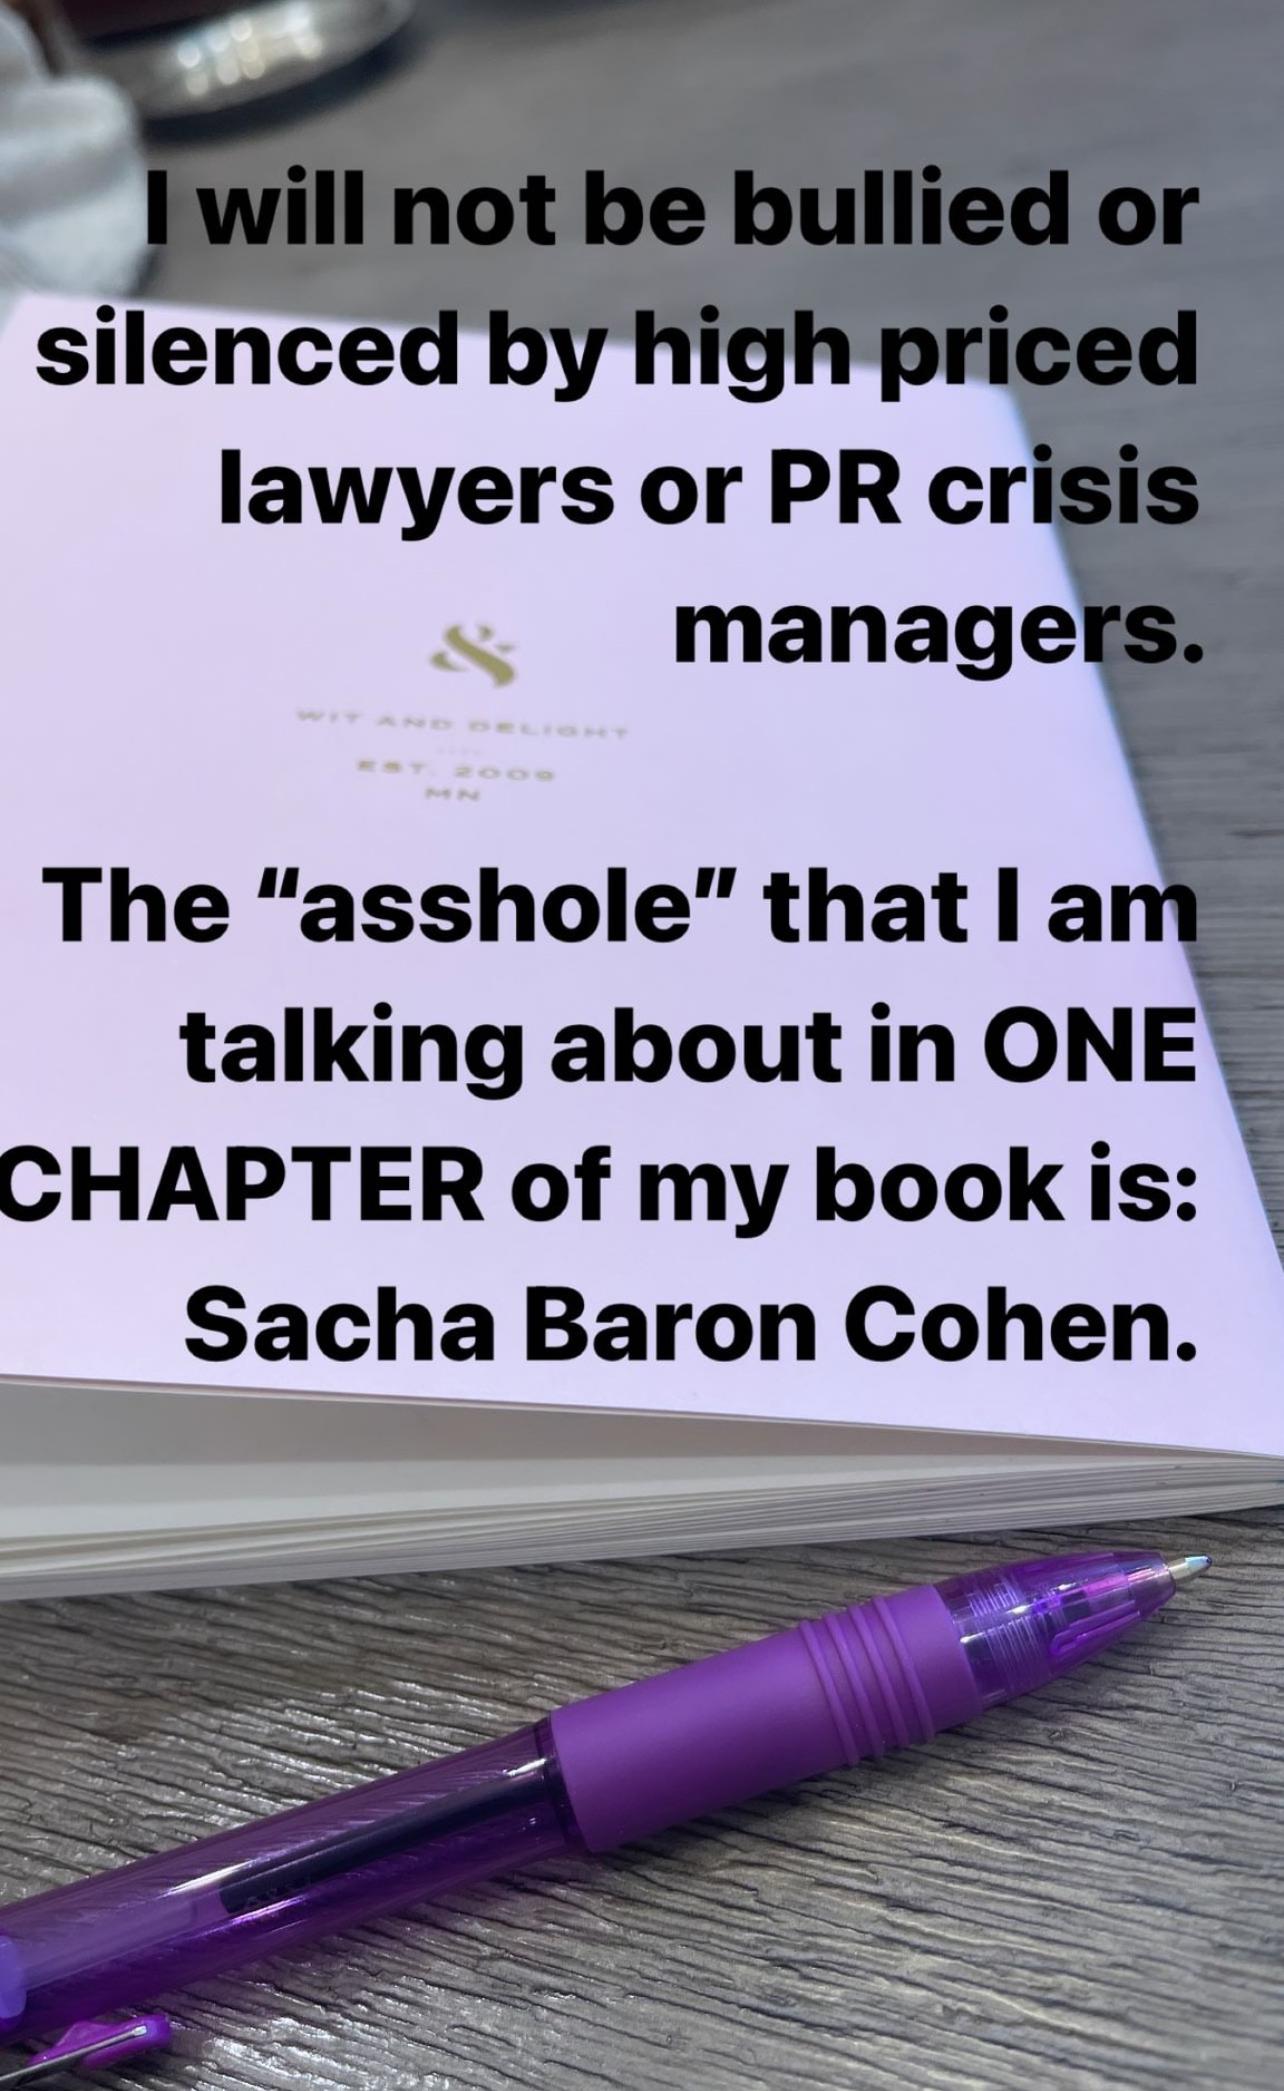 Rebel Wilson critica Sacha Baron Cohen por tentar silenciar seu próximo livro de memórias